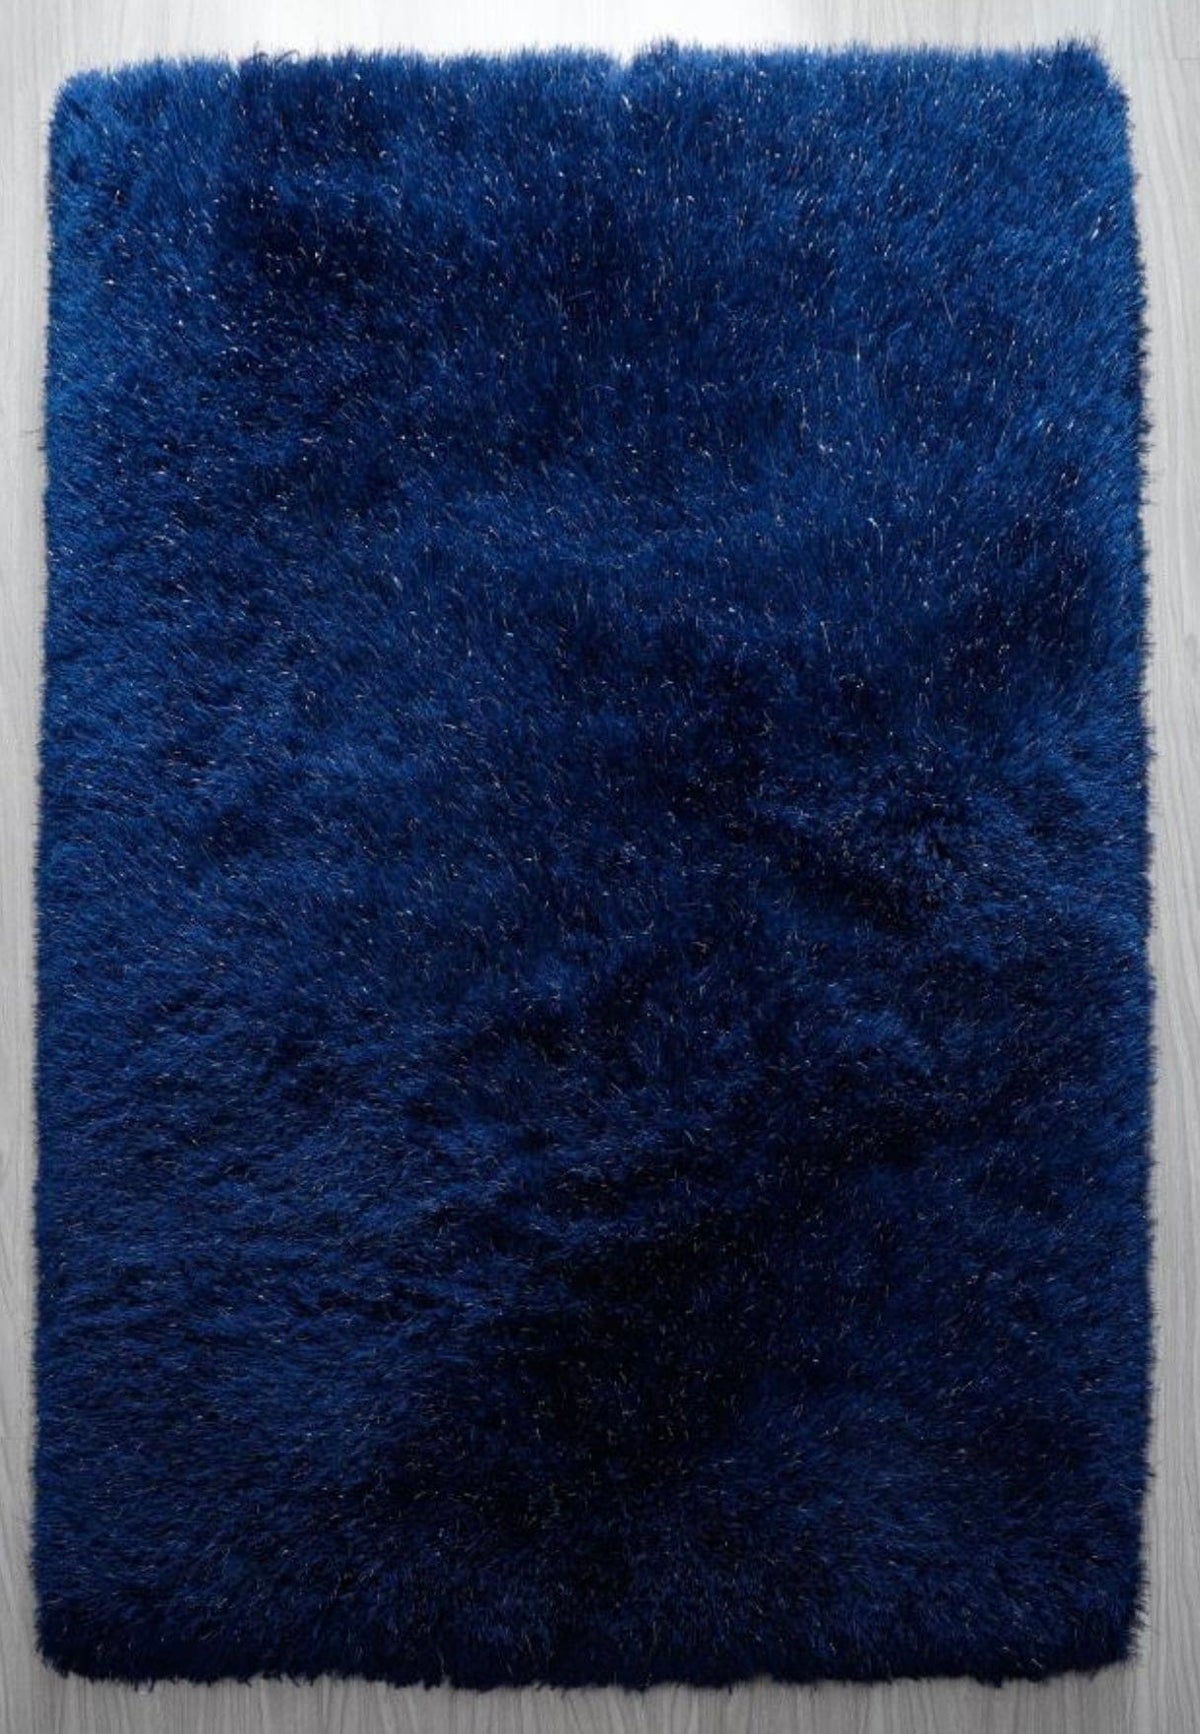 Shagy rug blue and silver